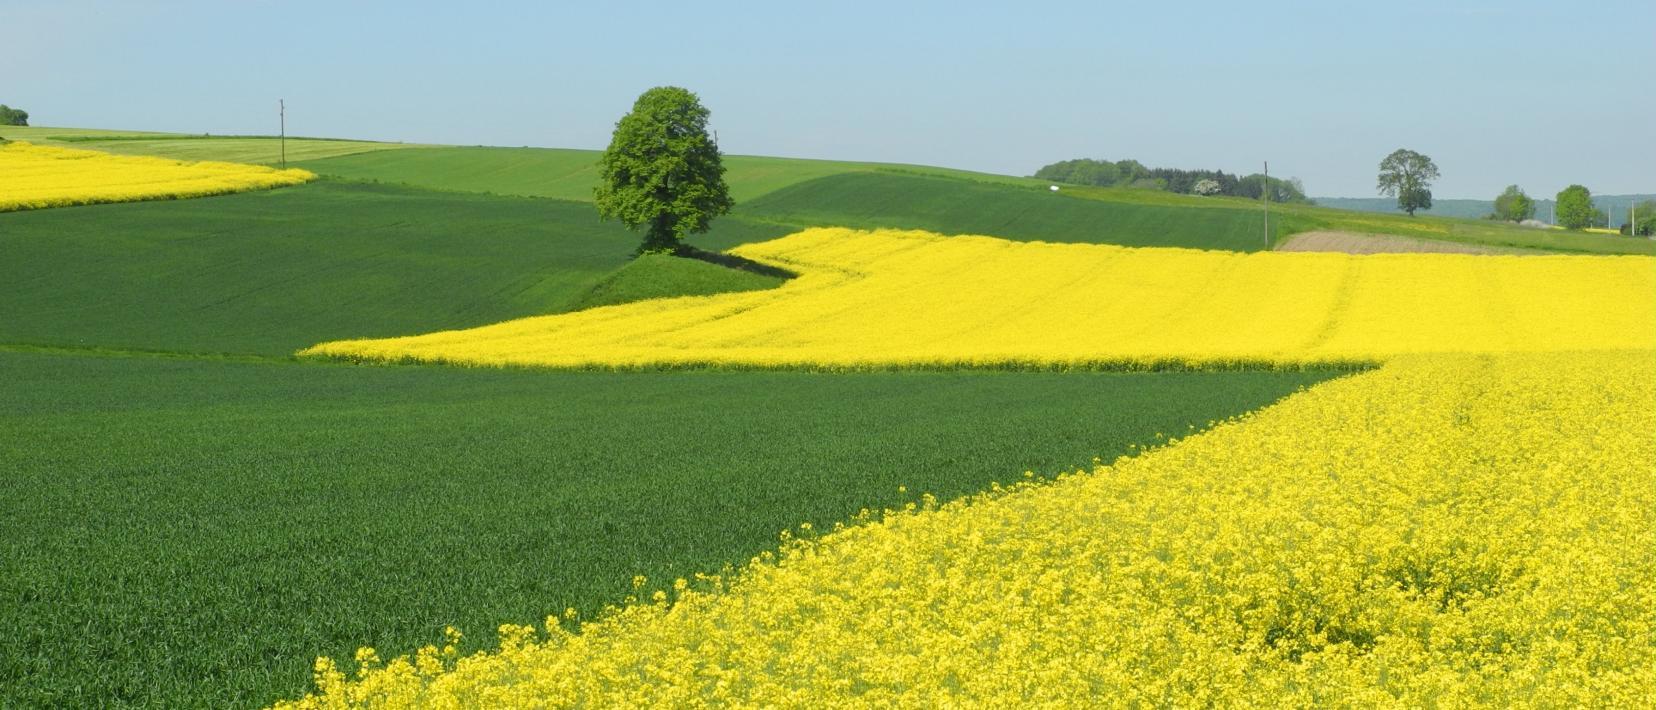 Ein gelb blühendes Rapsfeld neben einer grünbewachsenen Ackerfläche, im Hintergrund ein alleinstehender Baum.